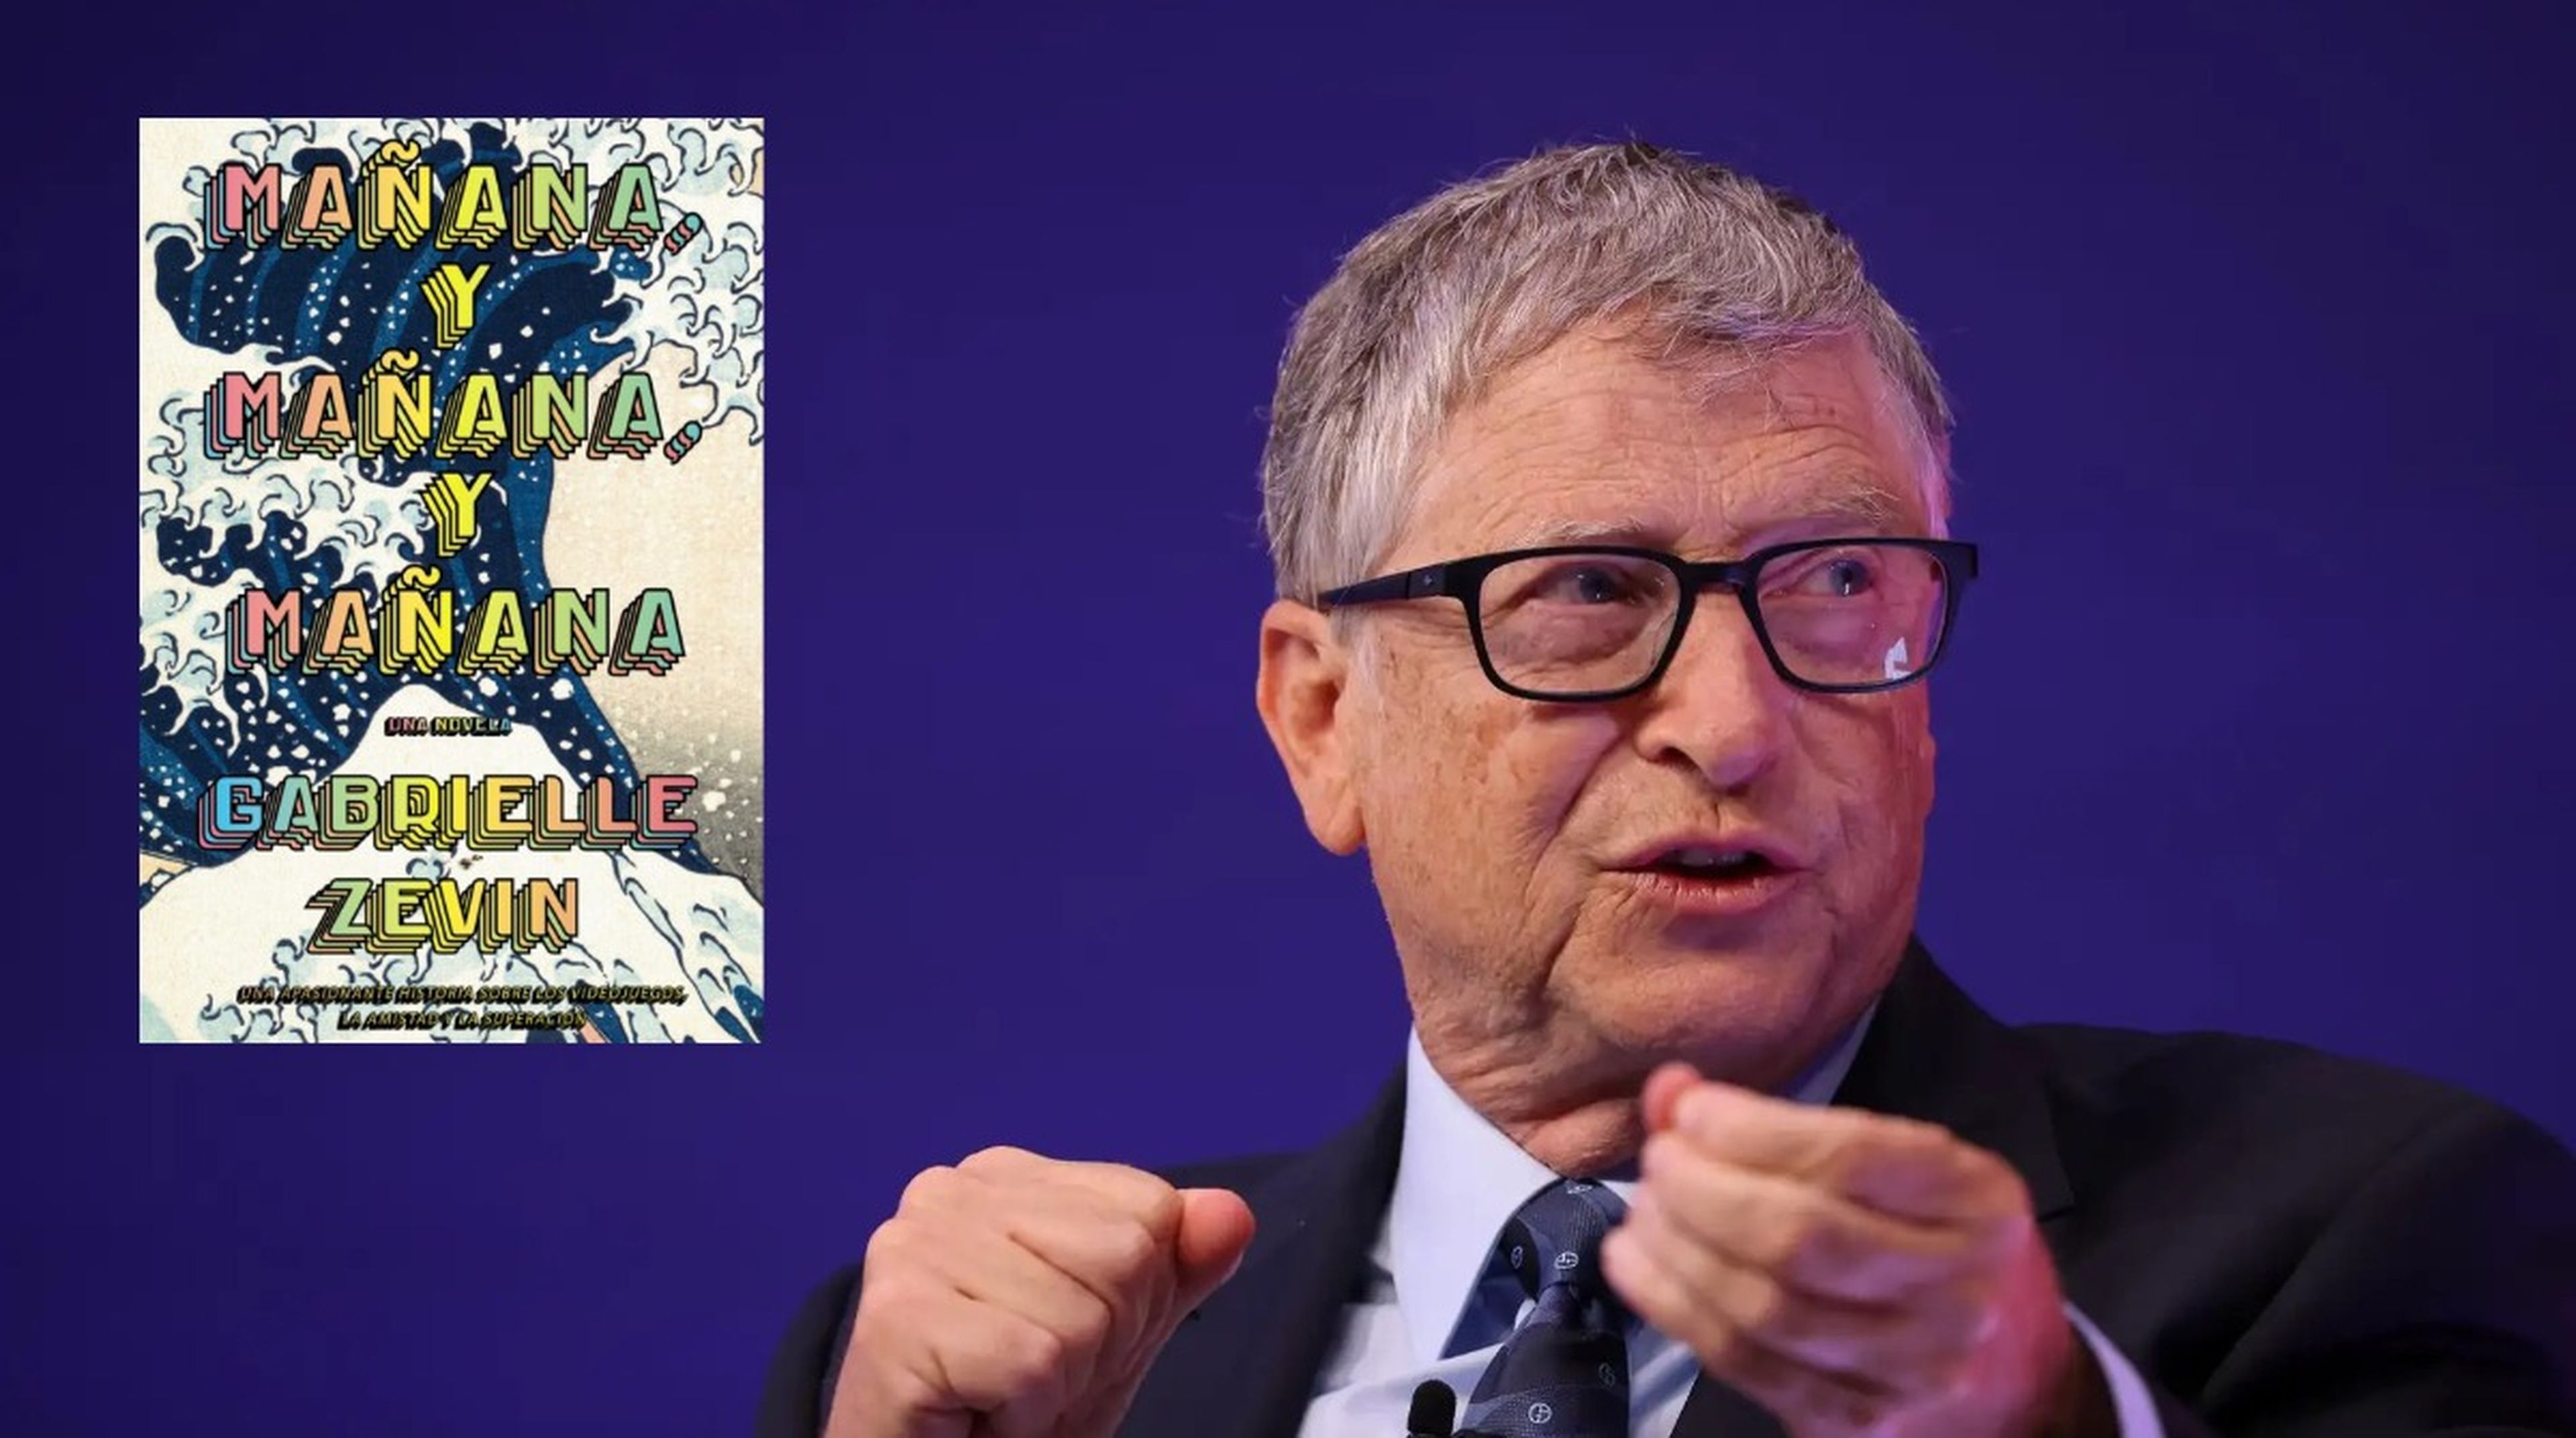 La última recomendación de Bill Gates es ¿un libro sobre videojuegos?